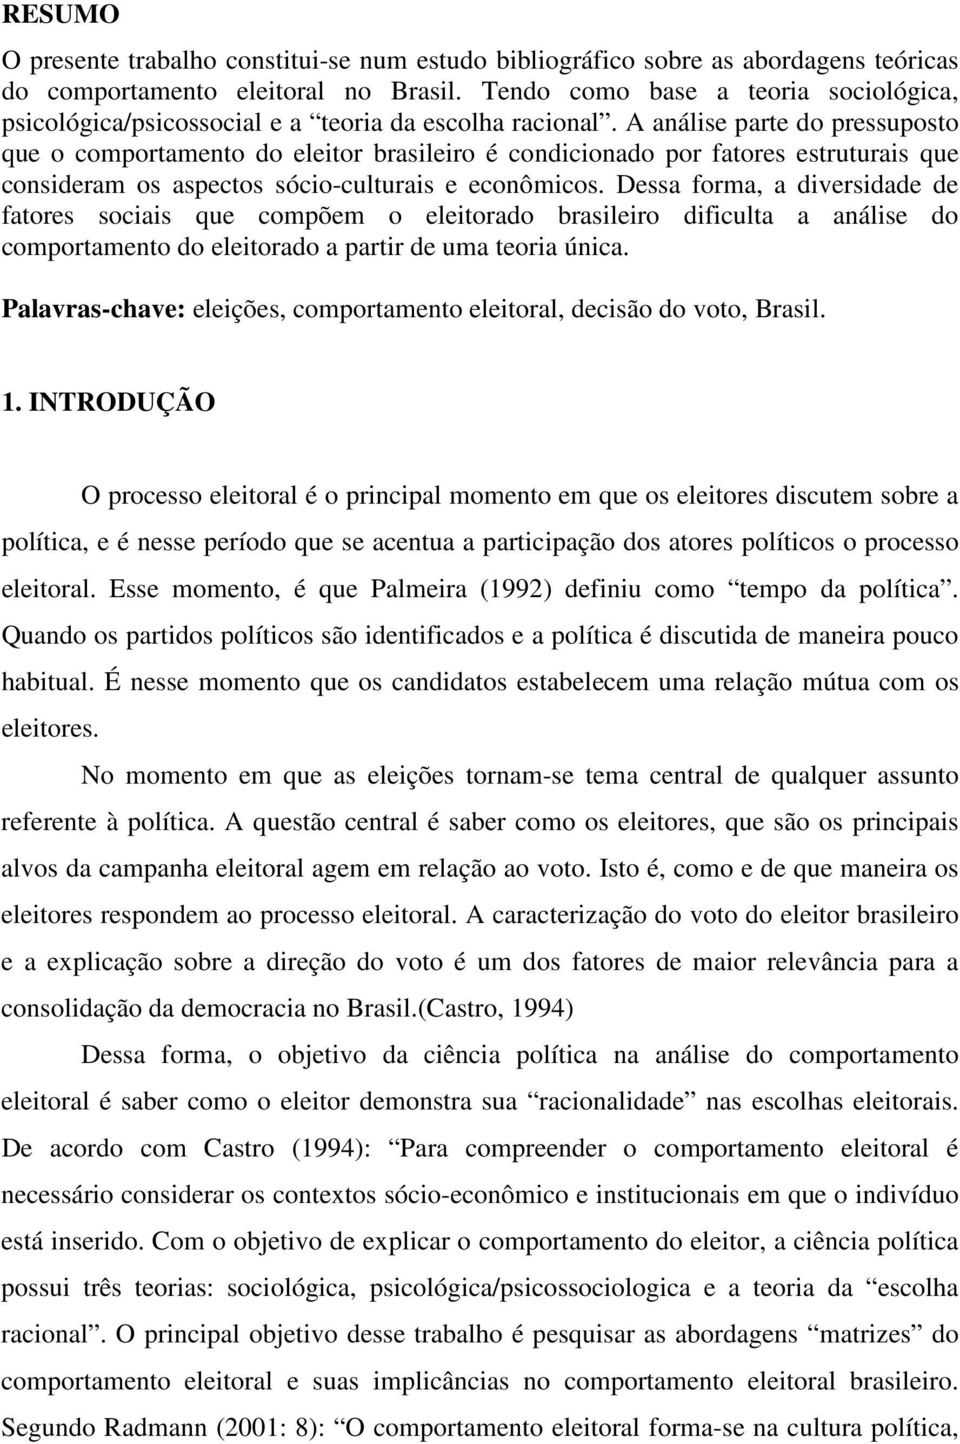 A análise parte do pressuposto que o comportamento do eleitor brasileiro é condicionado por fatores estruturais que consideram os aspectos sócio-culturais e econômicos.